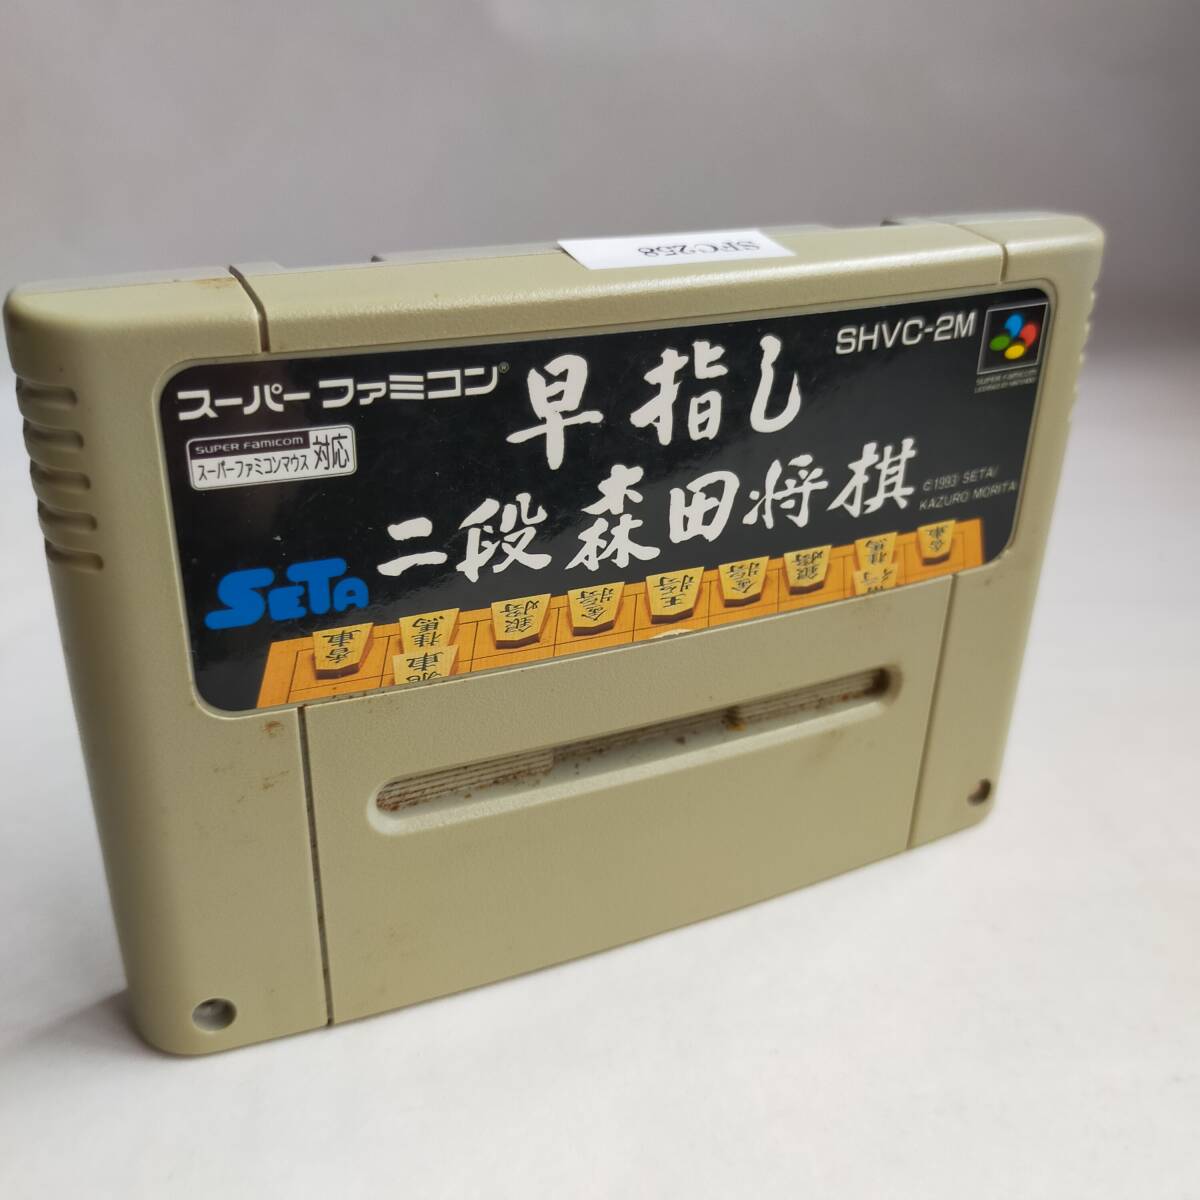 . палец . 2 уровень Morita shogi Super Famicom рабочее состояние подтверждено * терминал чистка settled [SFC6711_258]